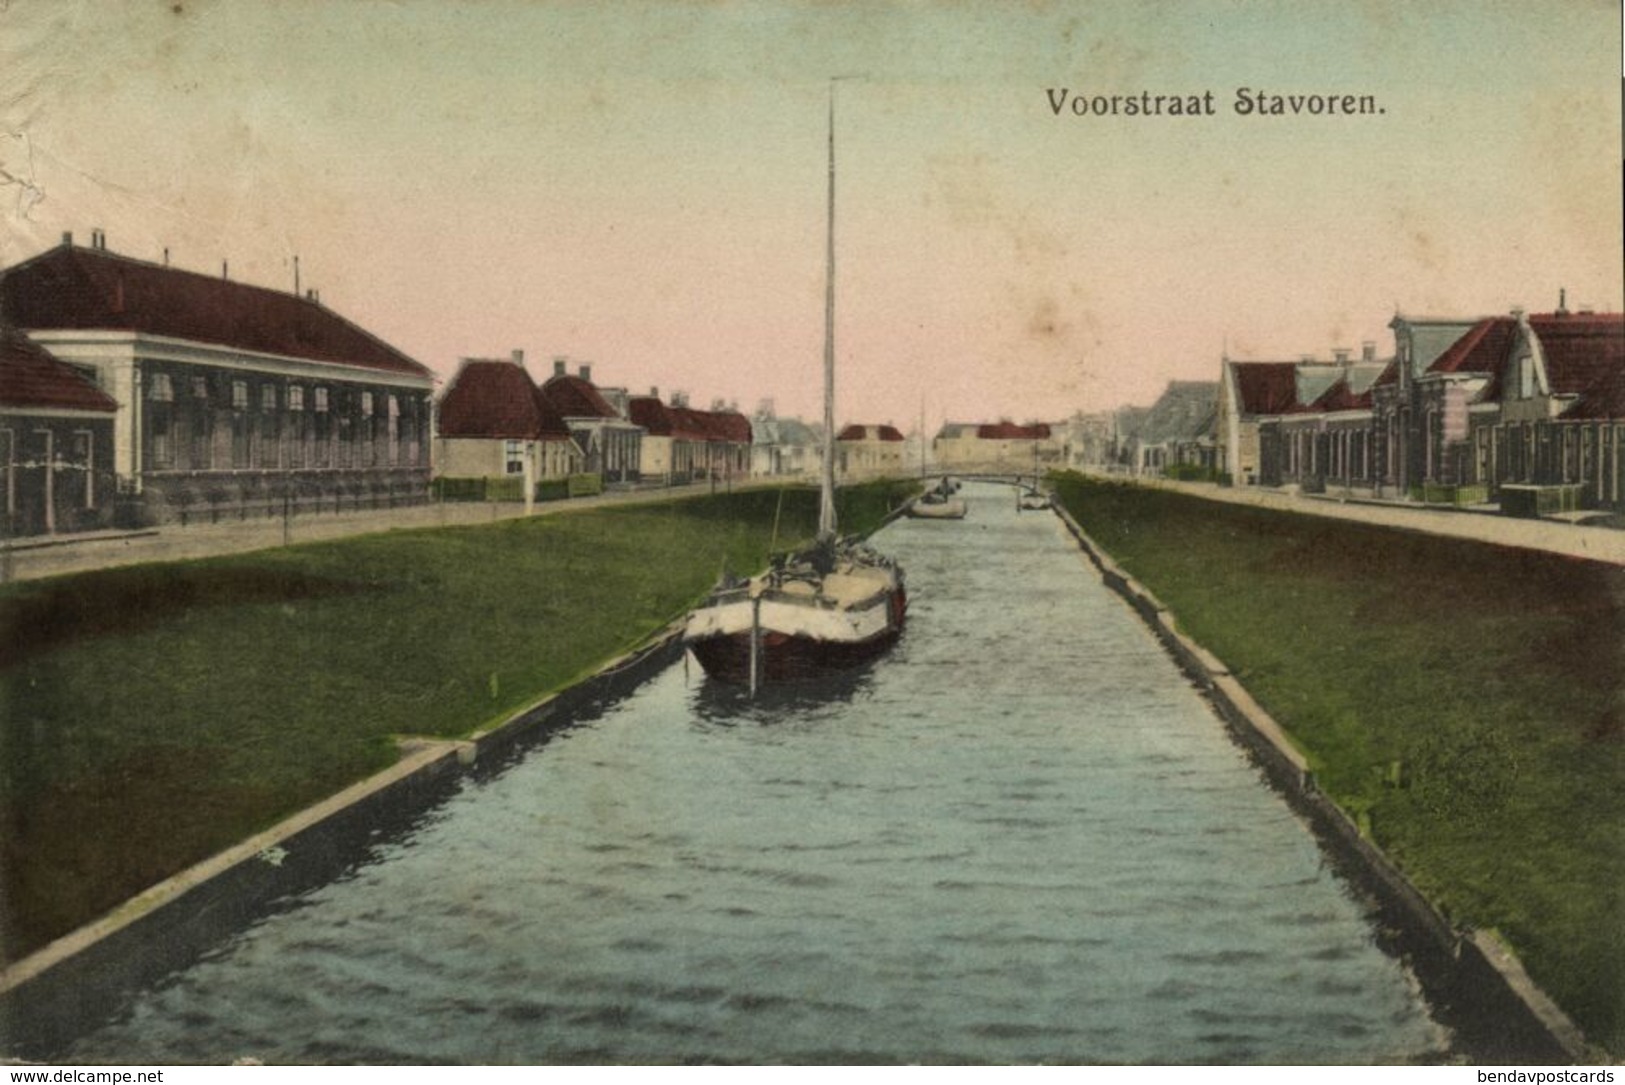 Nederland, STAVOREN, Voorstraat (1910s) Ansichtkaart - Stavoren